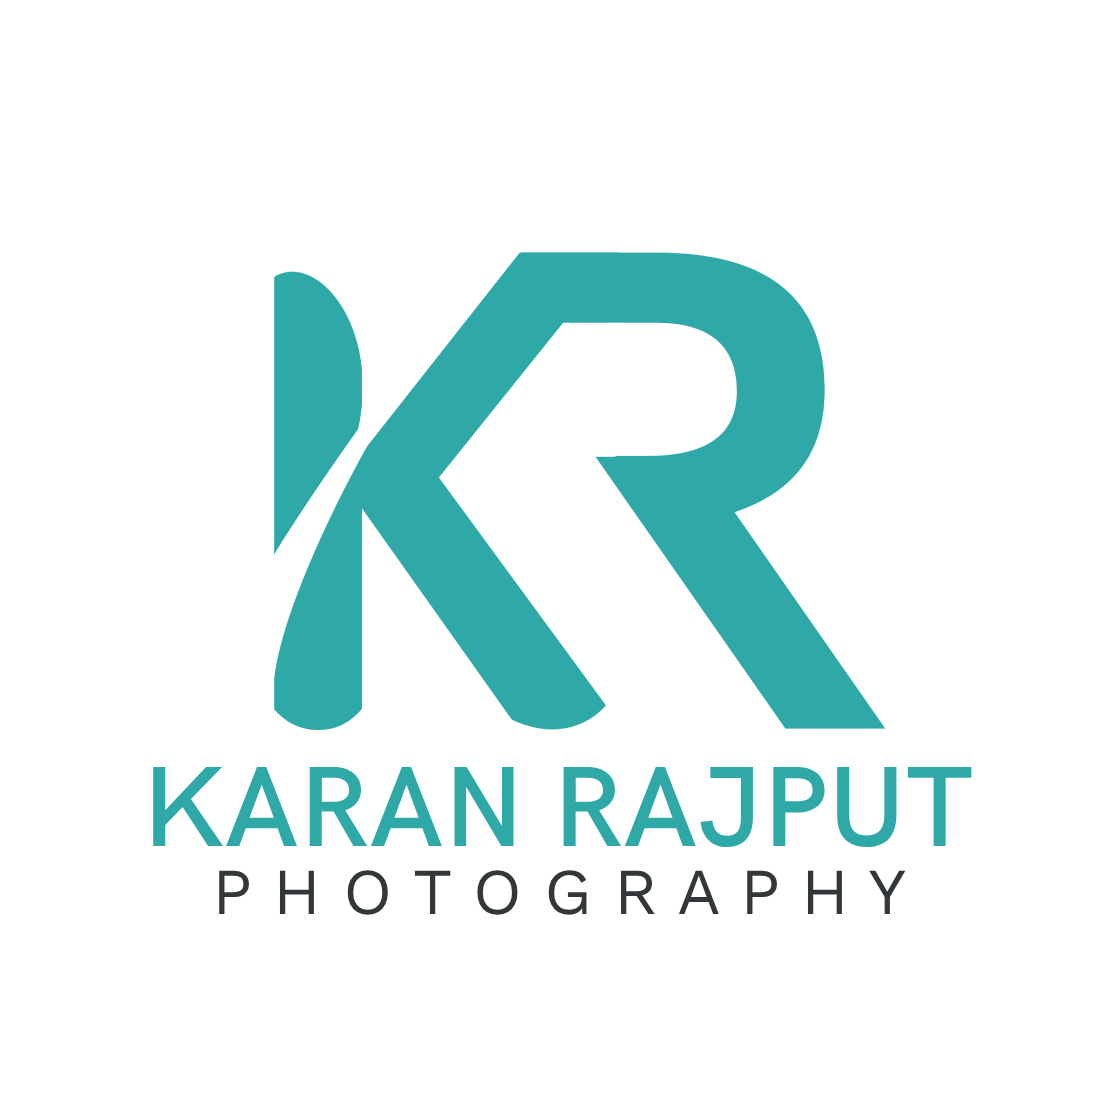 Pixellab editing/Logo Kaise Banaye - How to Make RK Logo I 3D Logo - YouTube